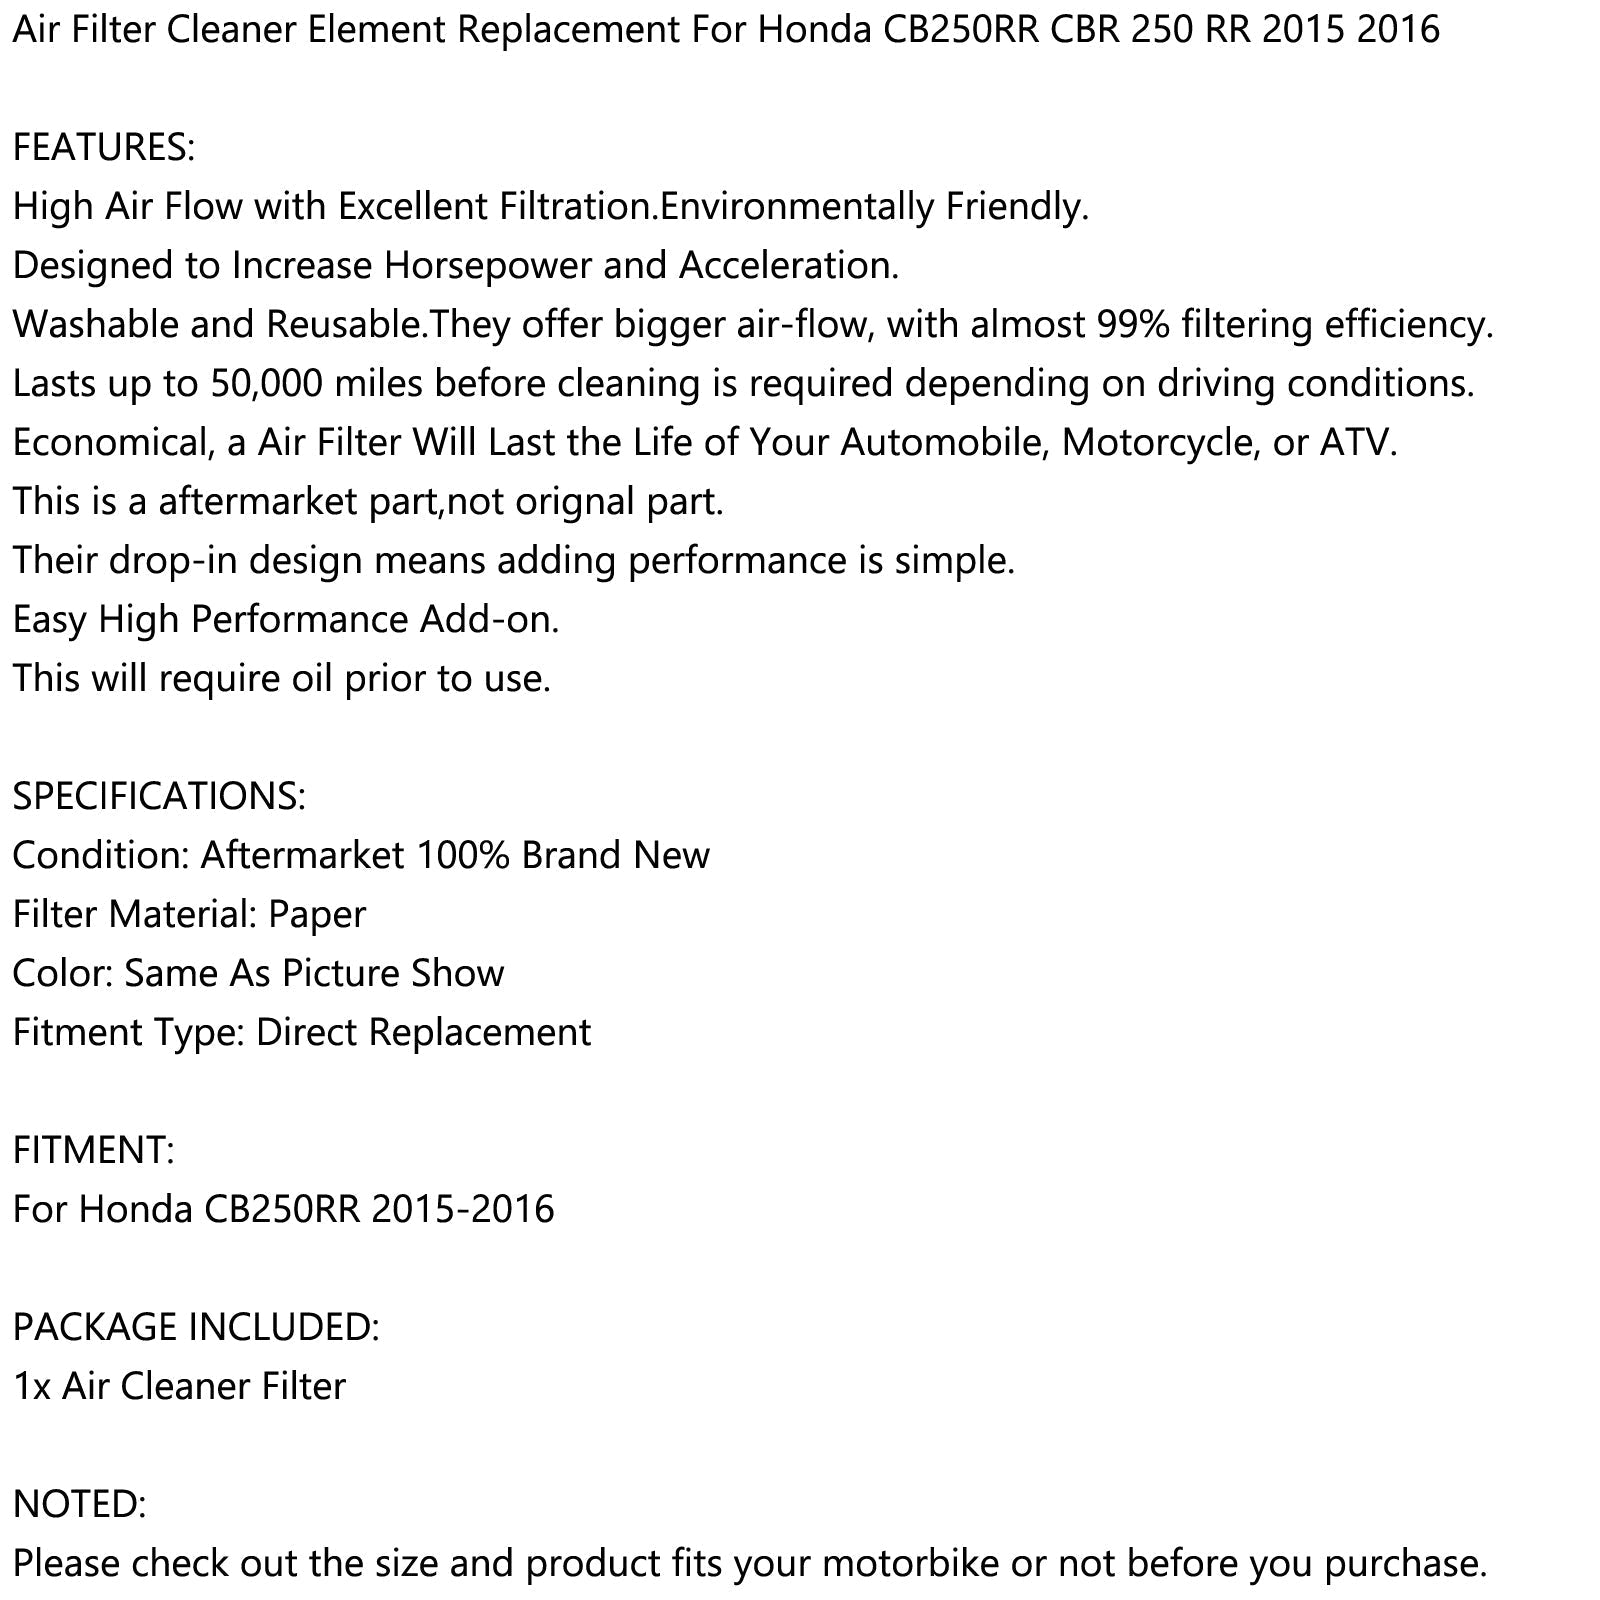 Remplacement de l'élément de filtre à air pour Honda CB250RR CB 250 RR 2015-2016 générique